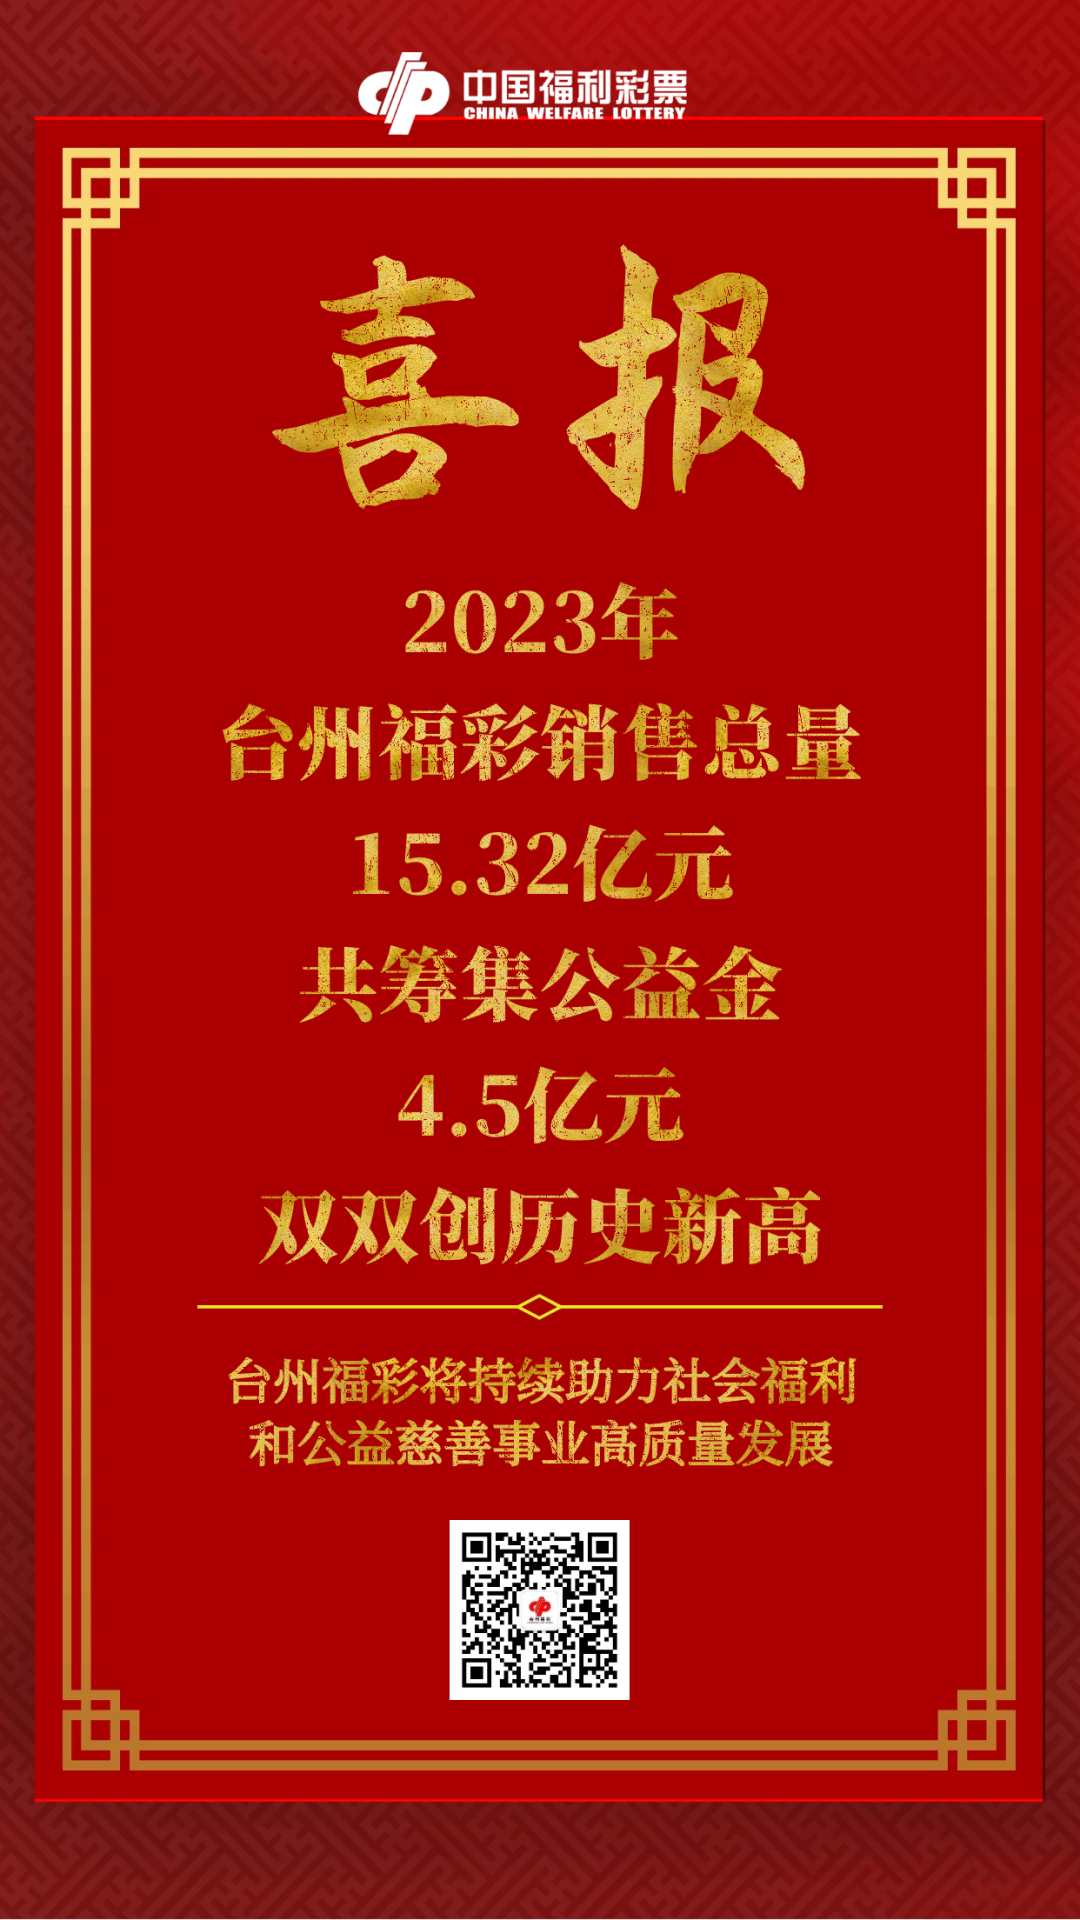 2023年台州福彩销售总量15.32亿元，共筹集公益金4.5亿元，双双创历史新高